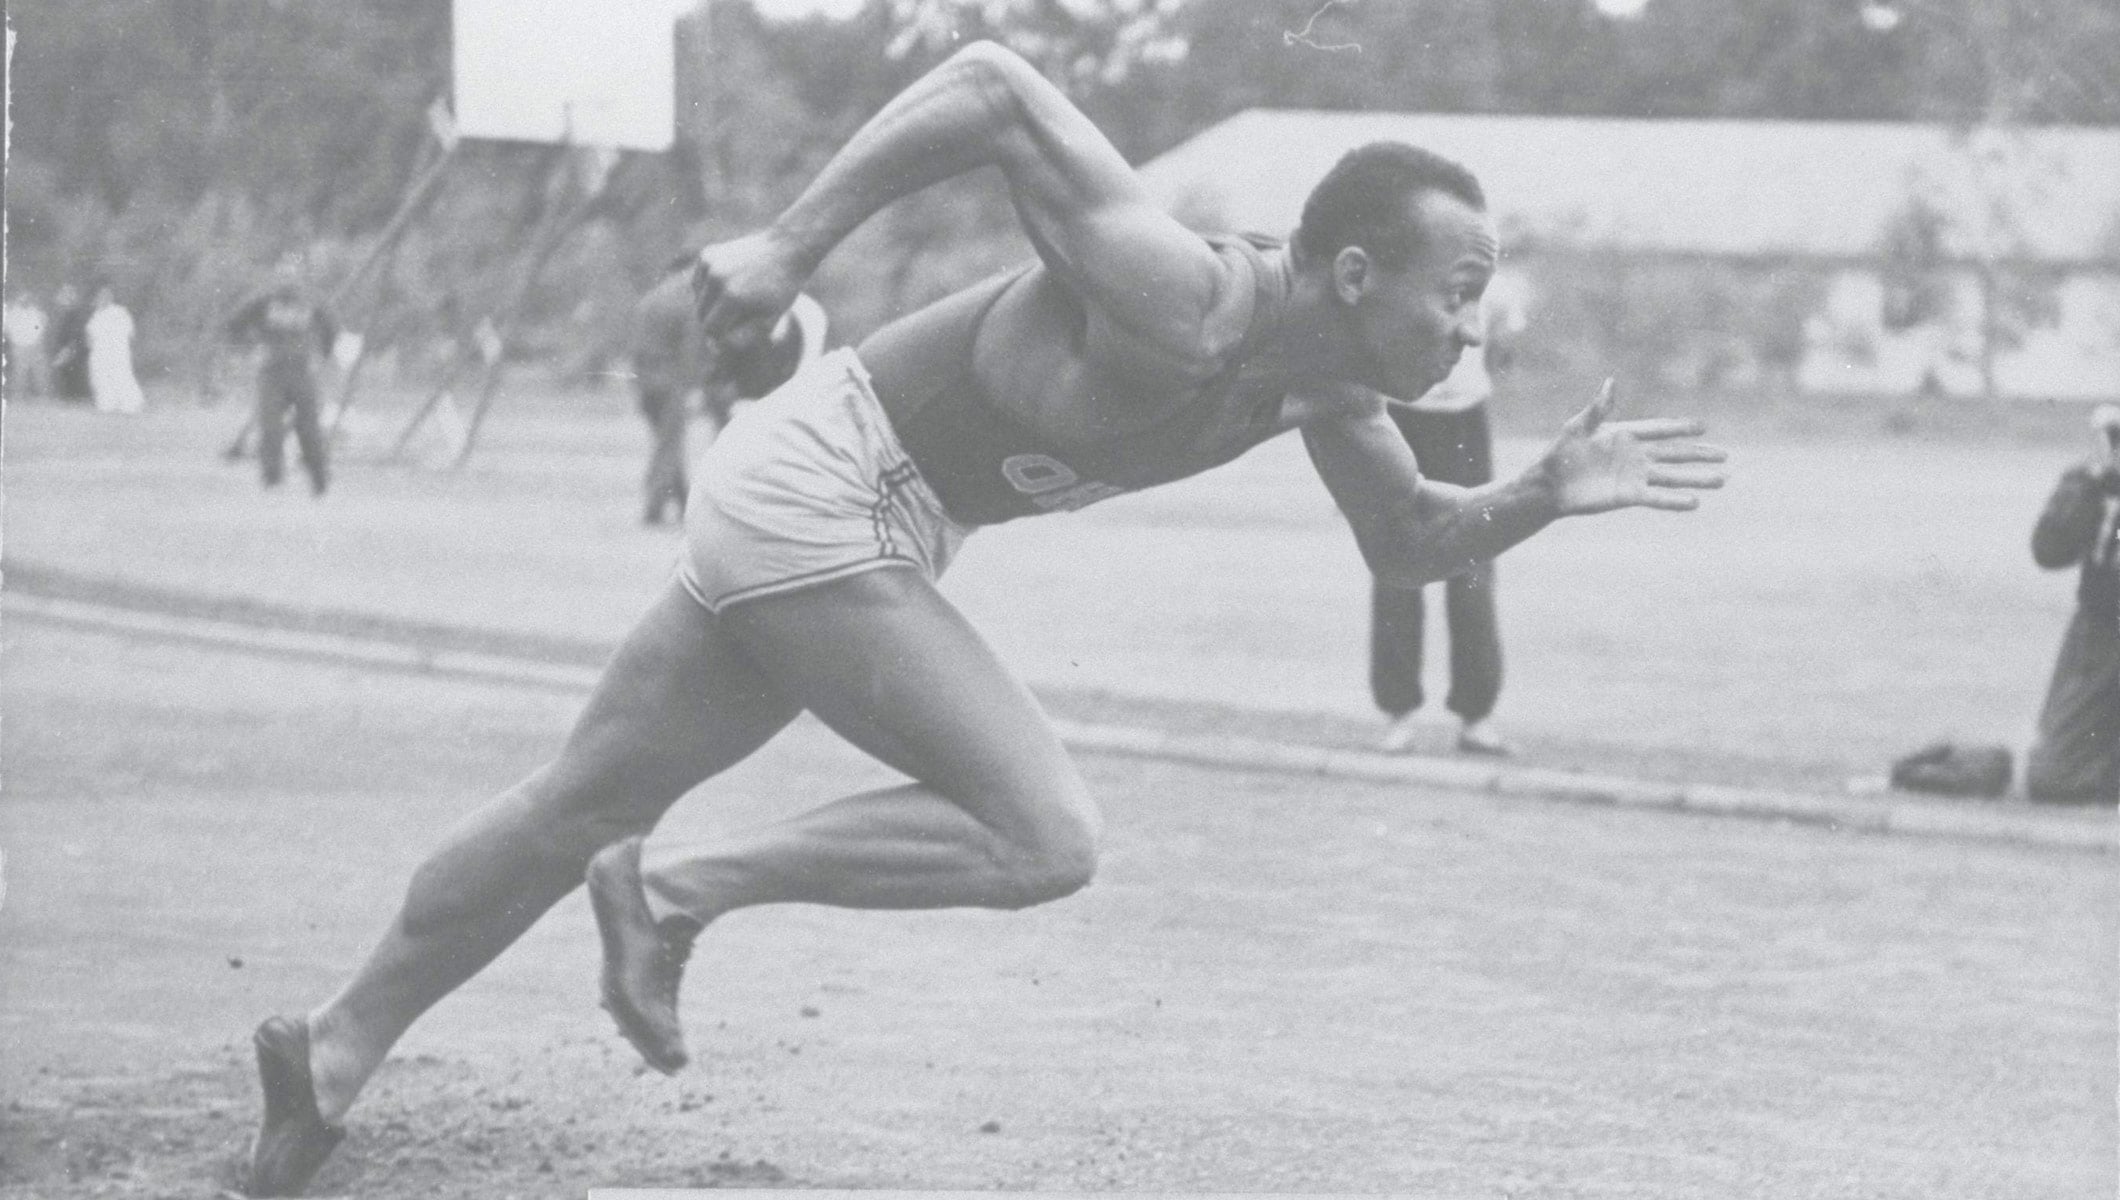 beet reactie Dank u voor uw hulp Jesse Owens and the greatest 45 minutes in sport - Olympic News